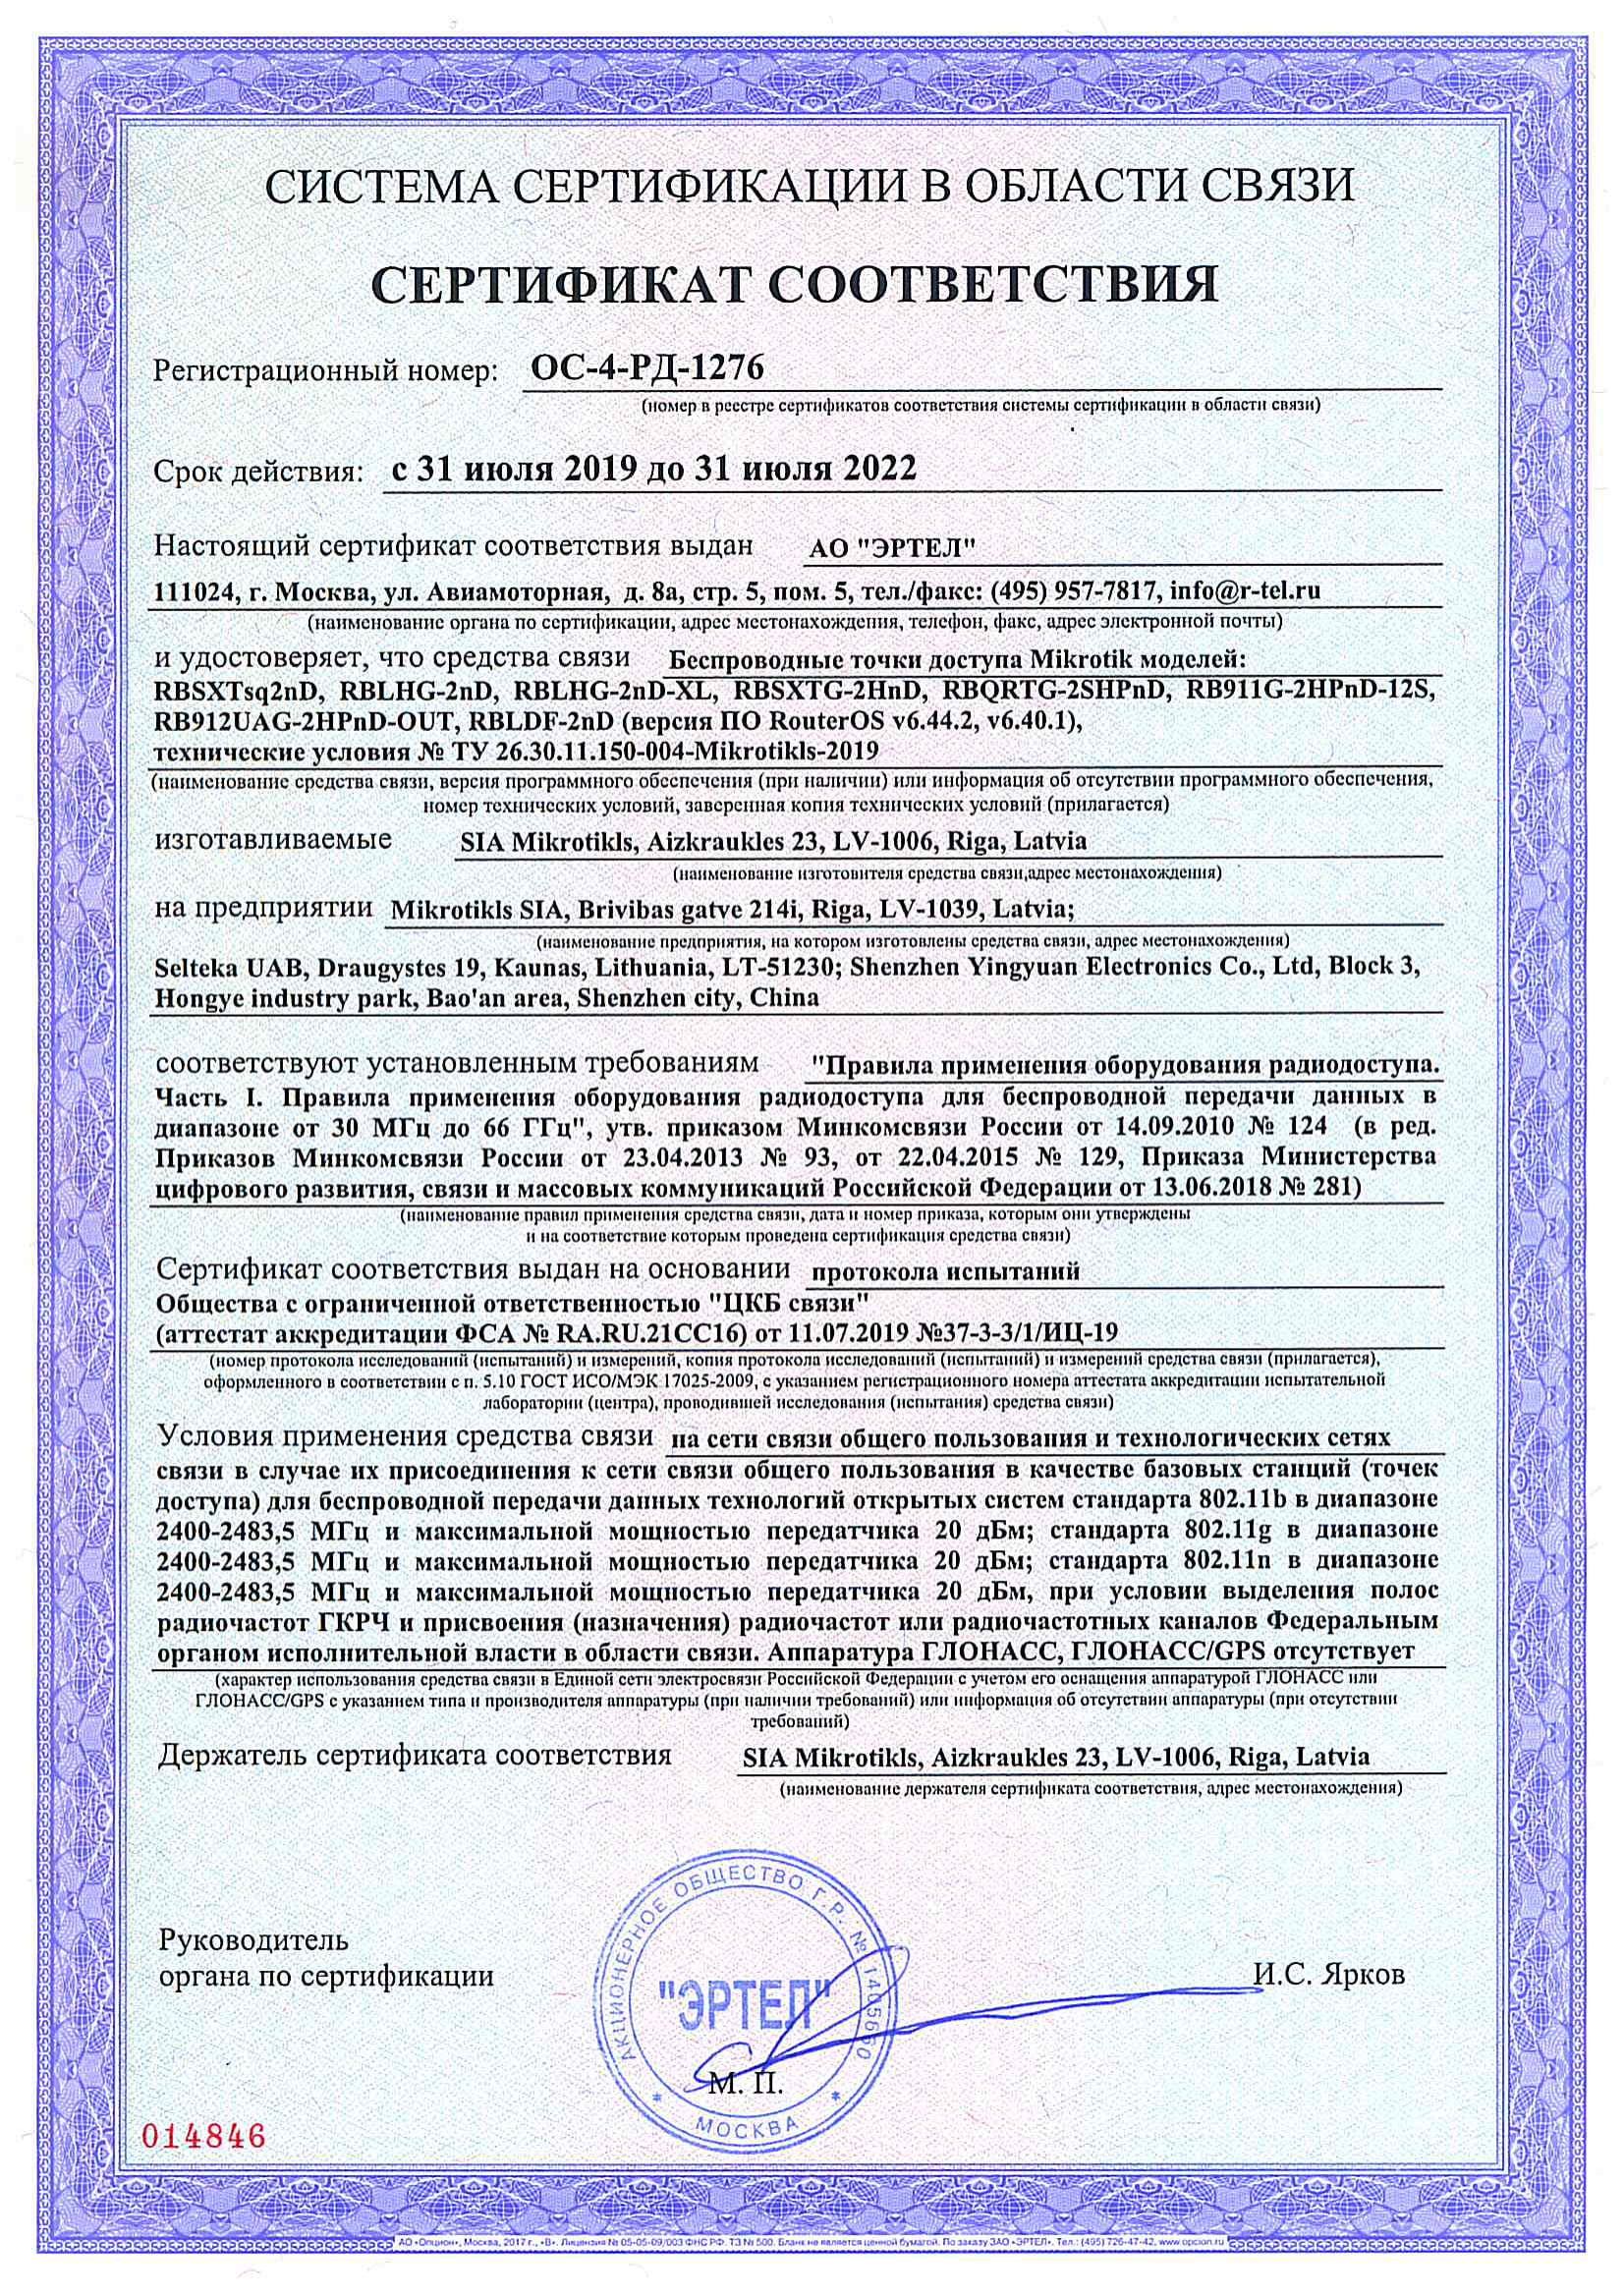 Сертификат соответствия в области связи ОС-4-РД-1276